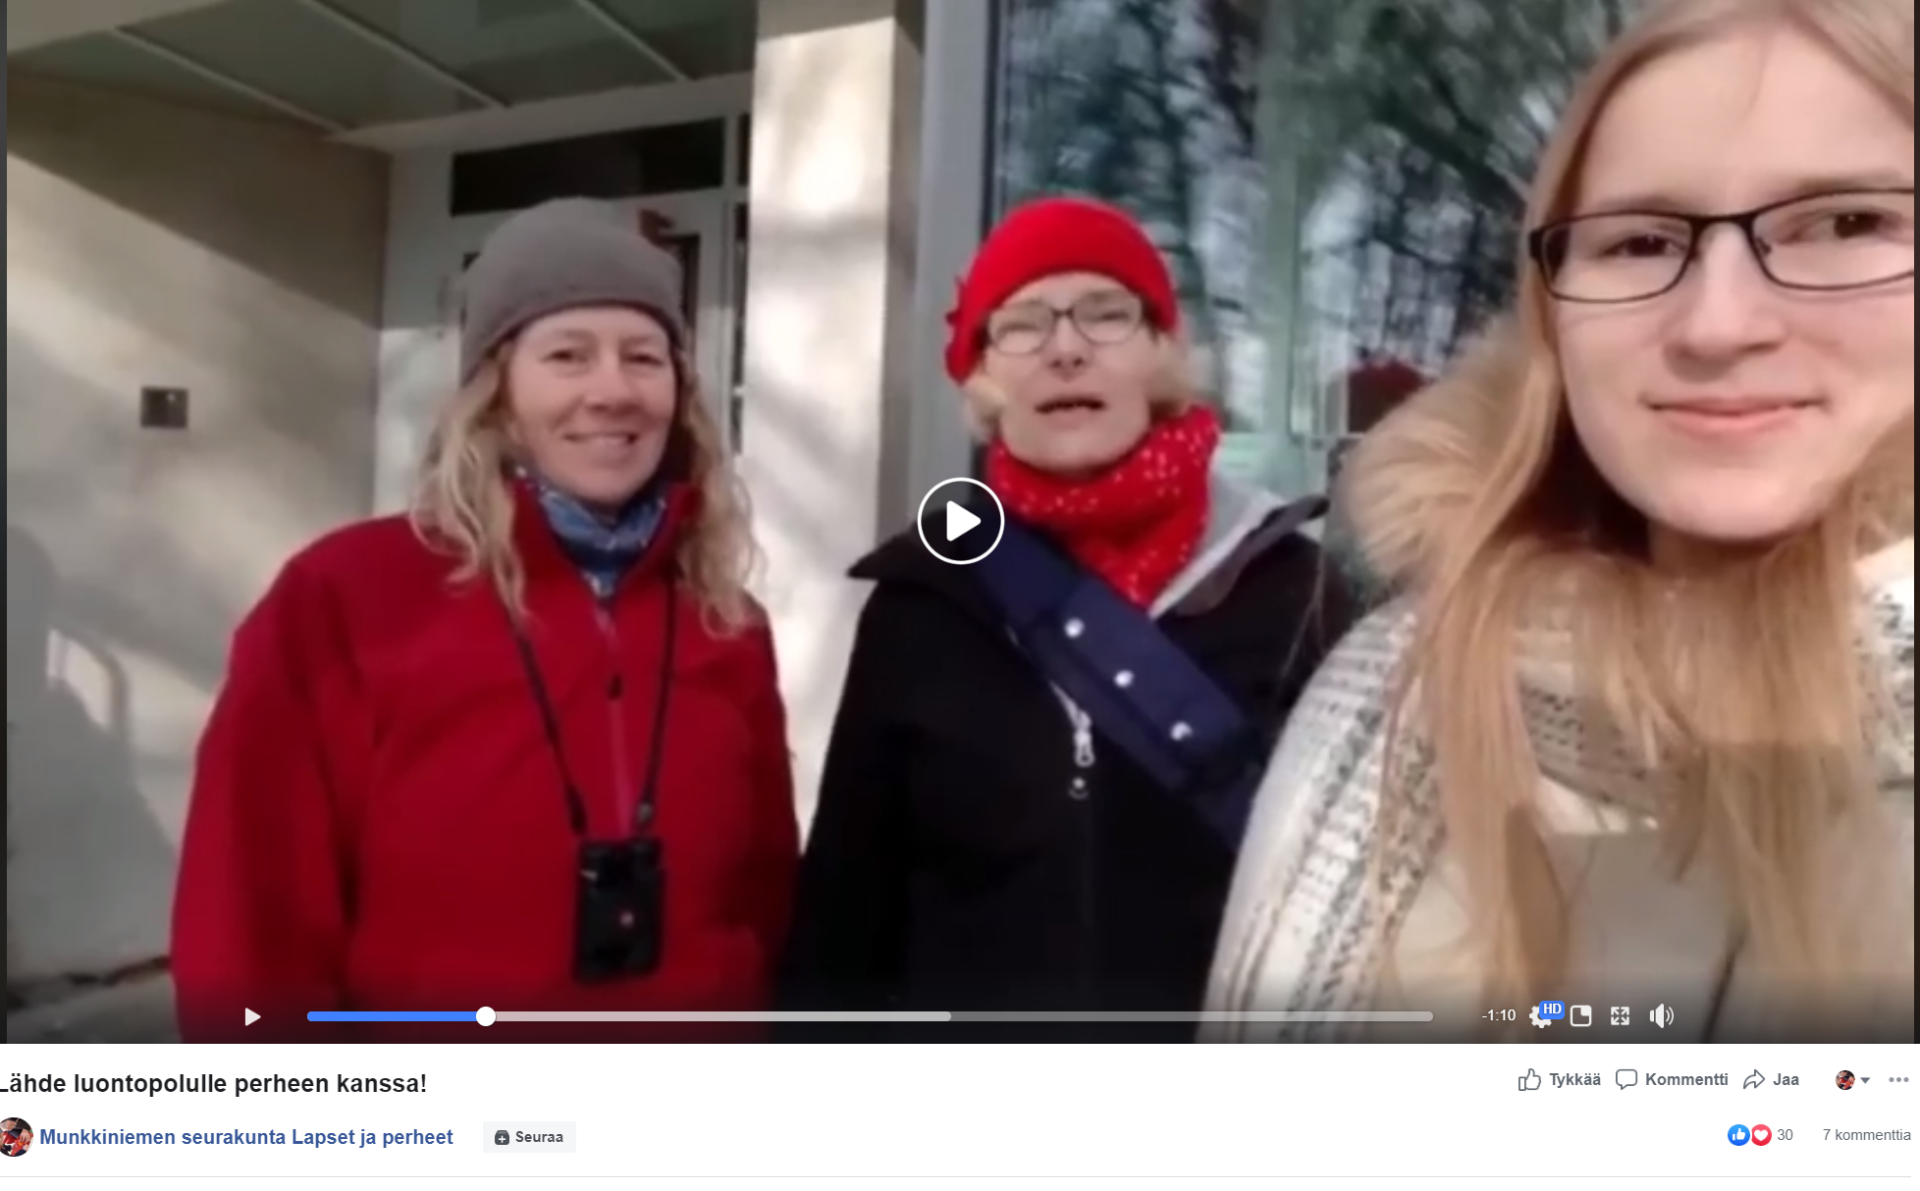 Kuvakaappaus Munkkiniemen seurakunnan Lapset ja perheet -Facebok-sivulta, kuvassa Rauna Mannermaa, Leena Eronen ja Nita Sirkiä